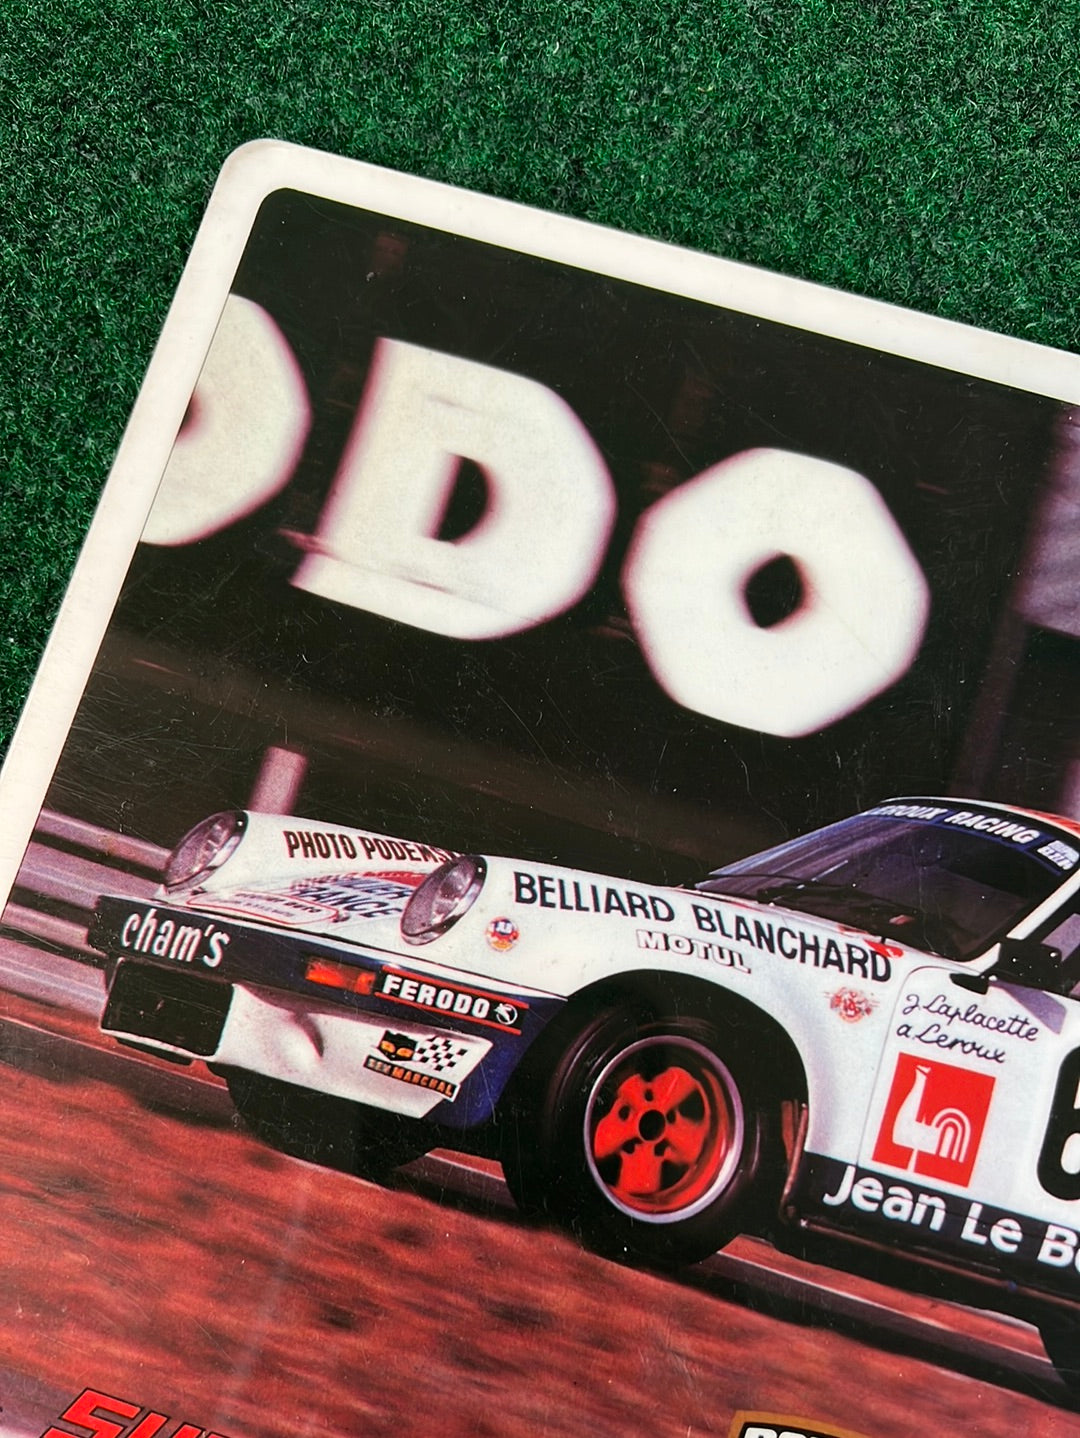 Porsche 930 Turbo “Super Car” Vintage Plastic Sign